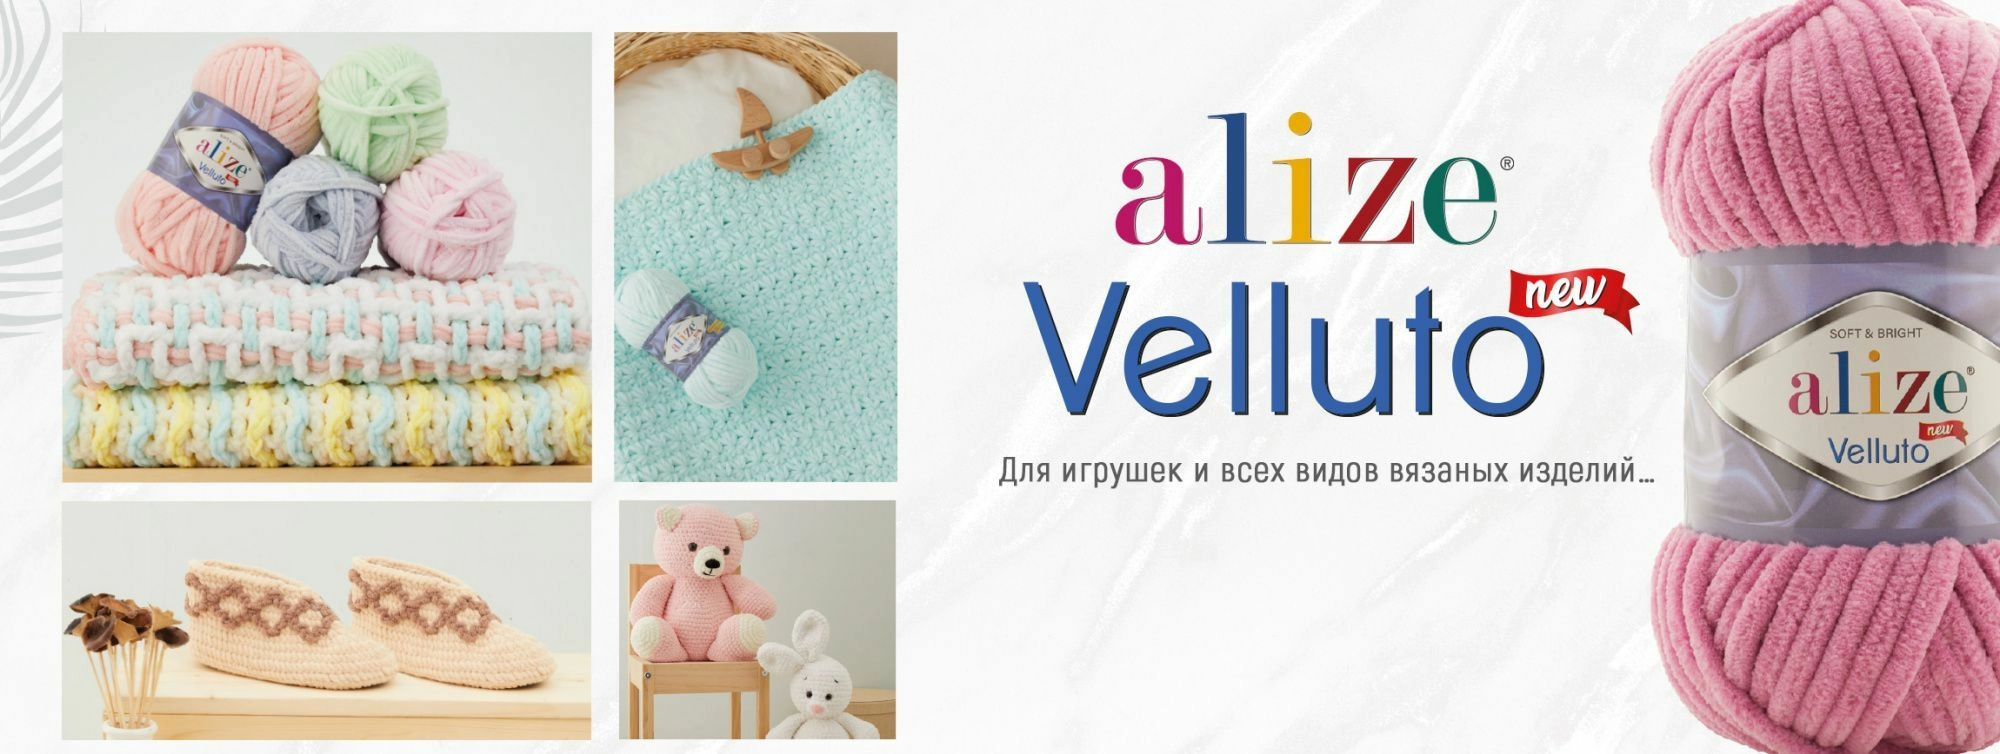 Найти магазины товаров для творчества и рукоделия в Новосибирске, узнать адреса и телефоны - BLIZKO